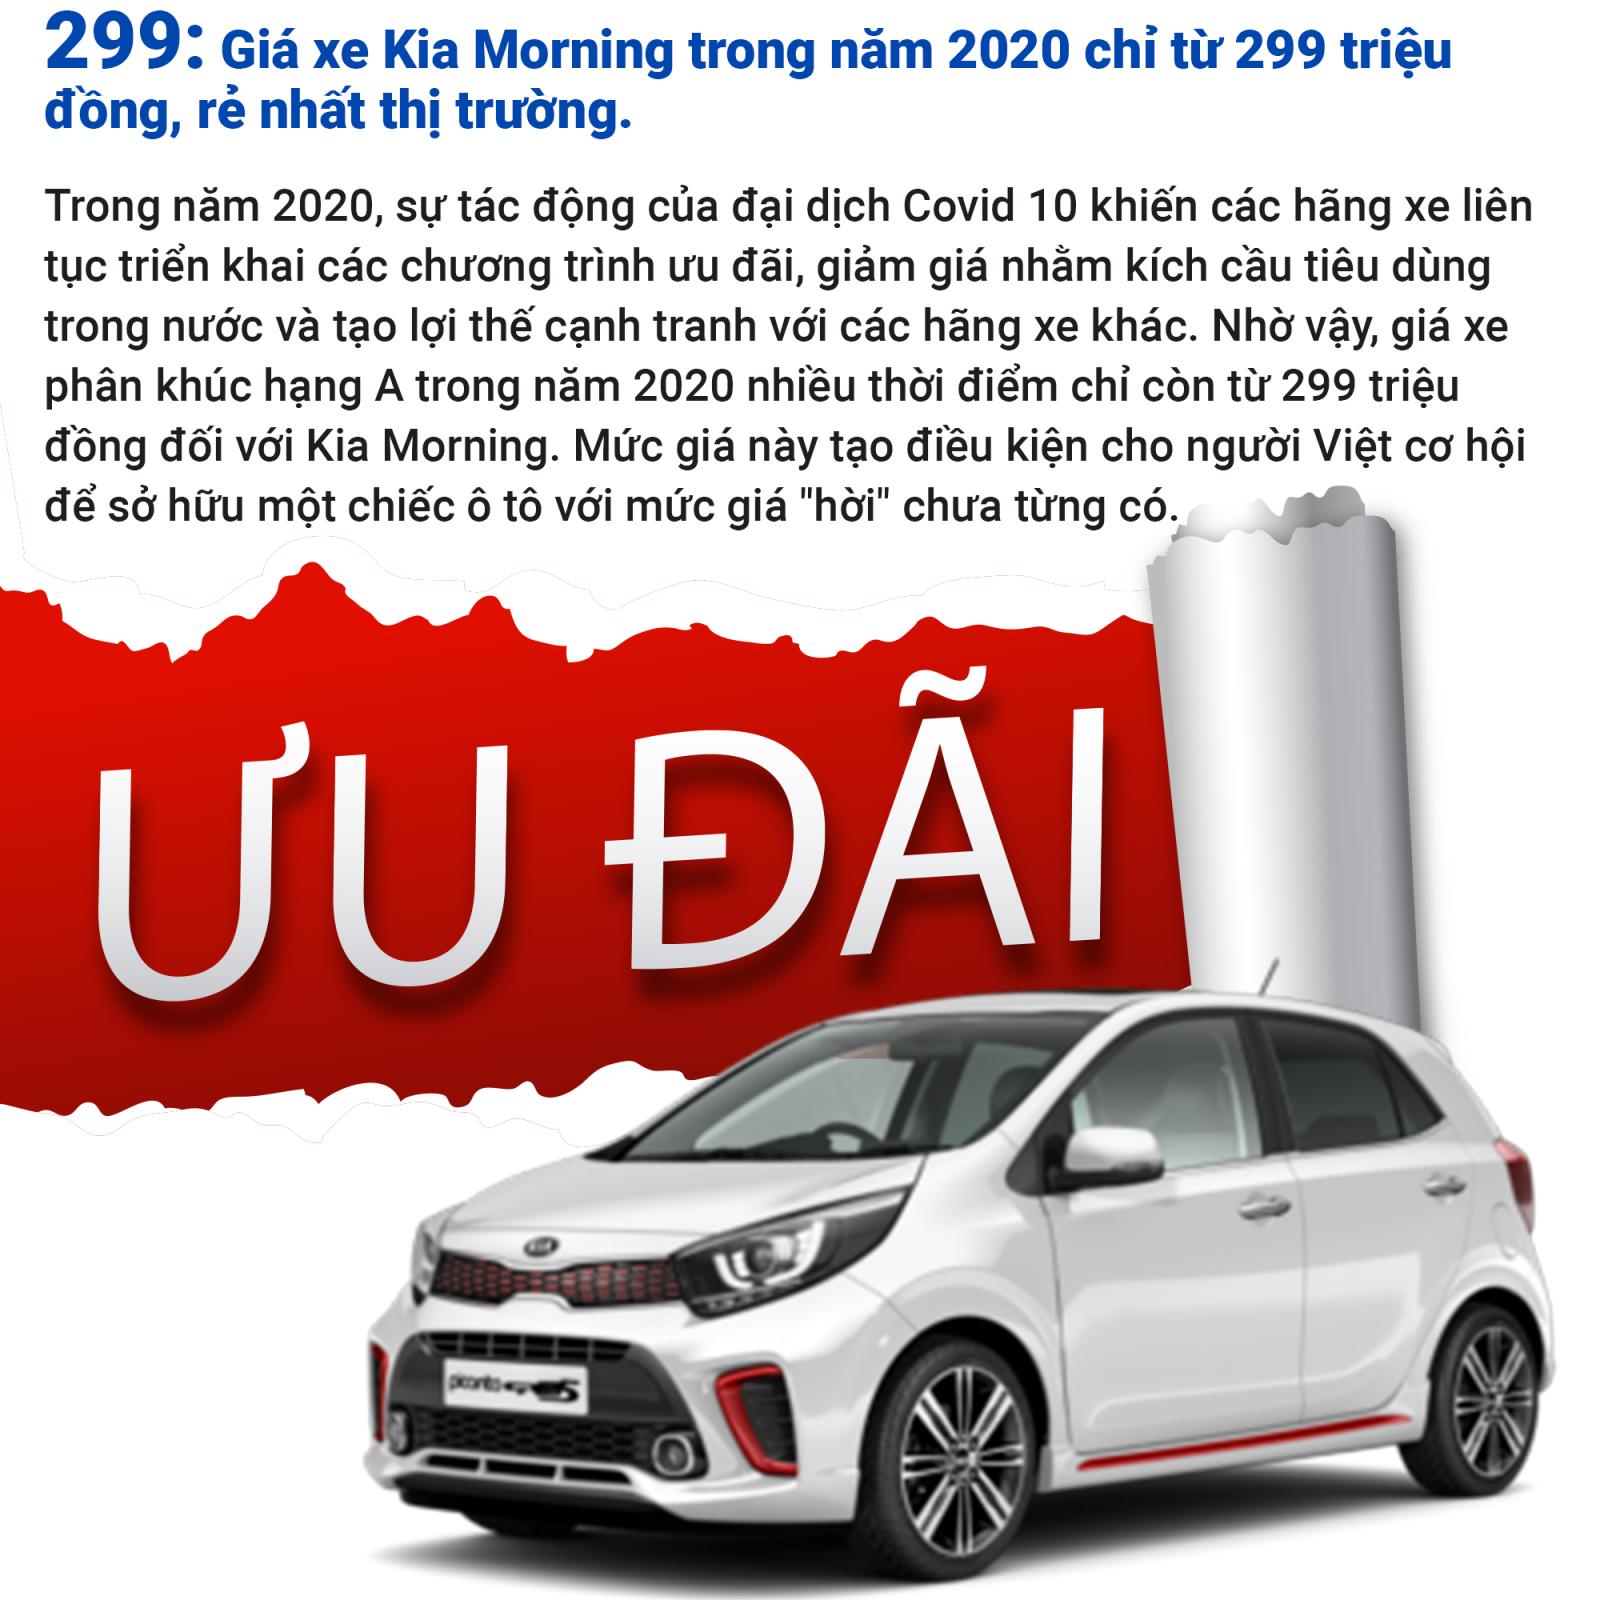 Những con số ấn tượng của dòng xe phân khúc hạng A tại thị trường Việt Nam năm 2020 3.